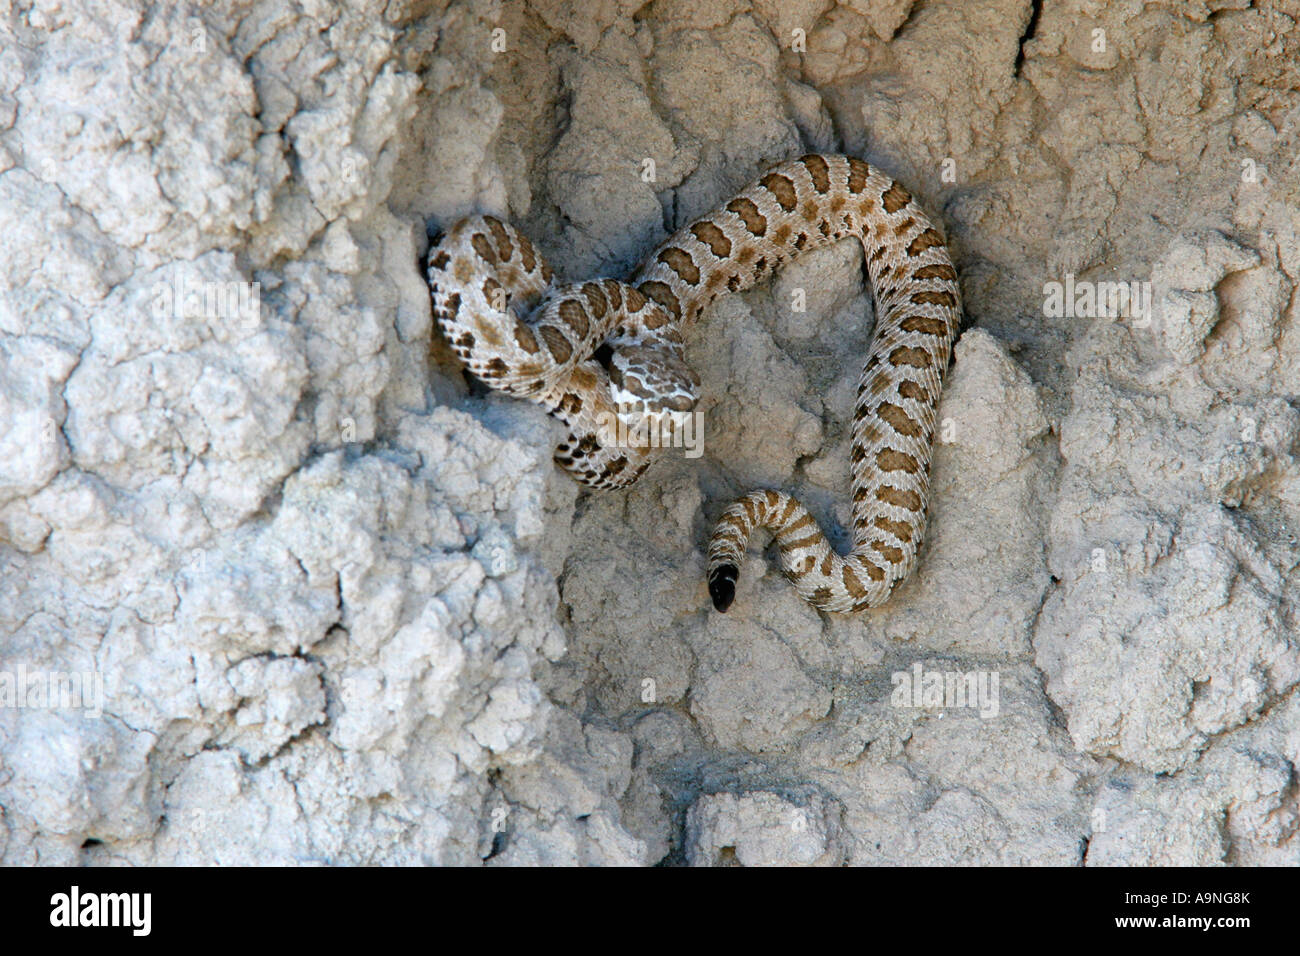 western pygmy rattlesnake, fantasy canyon, utah Stock Photo